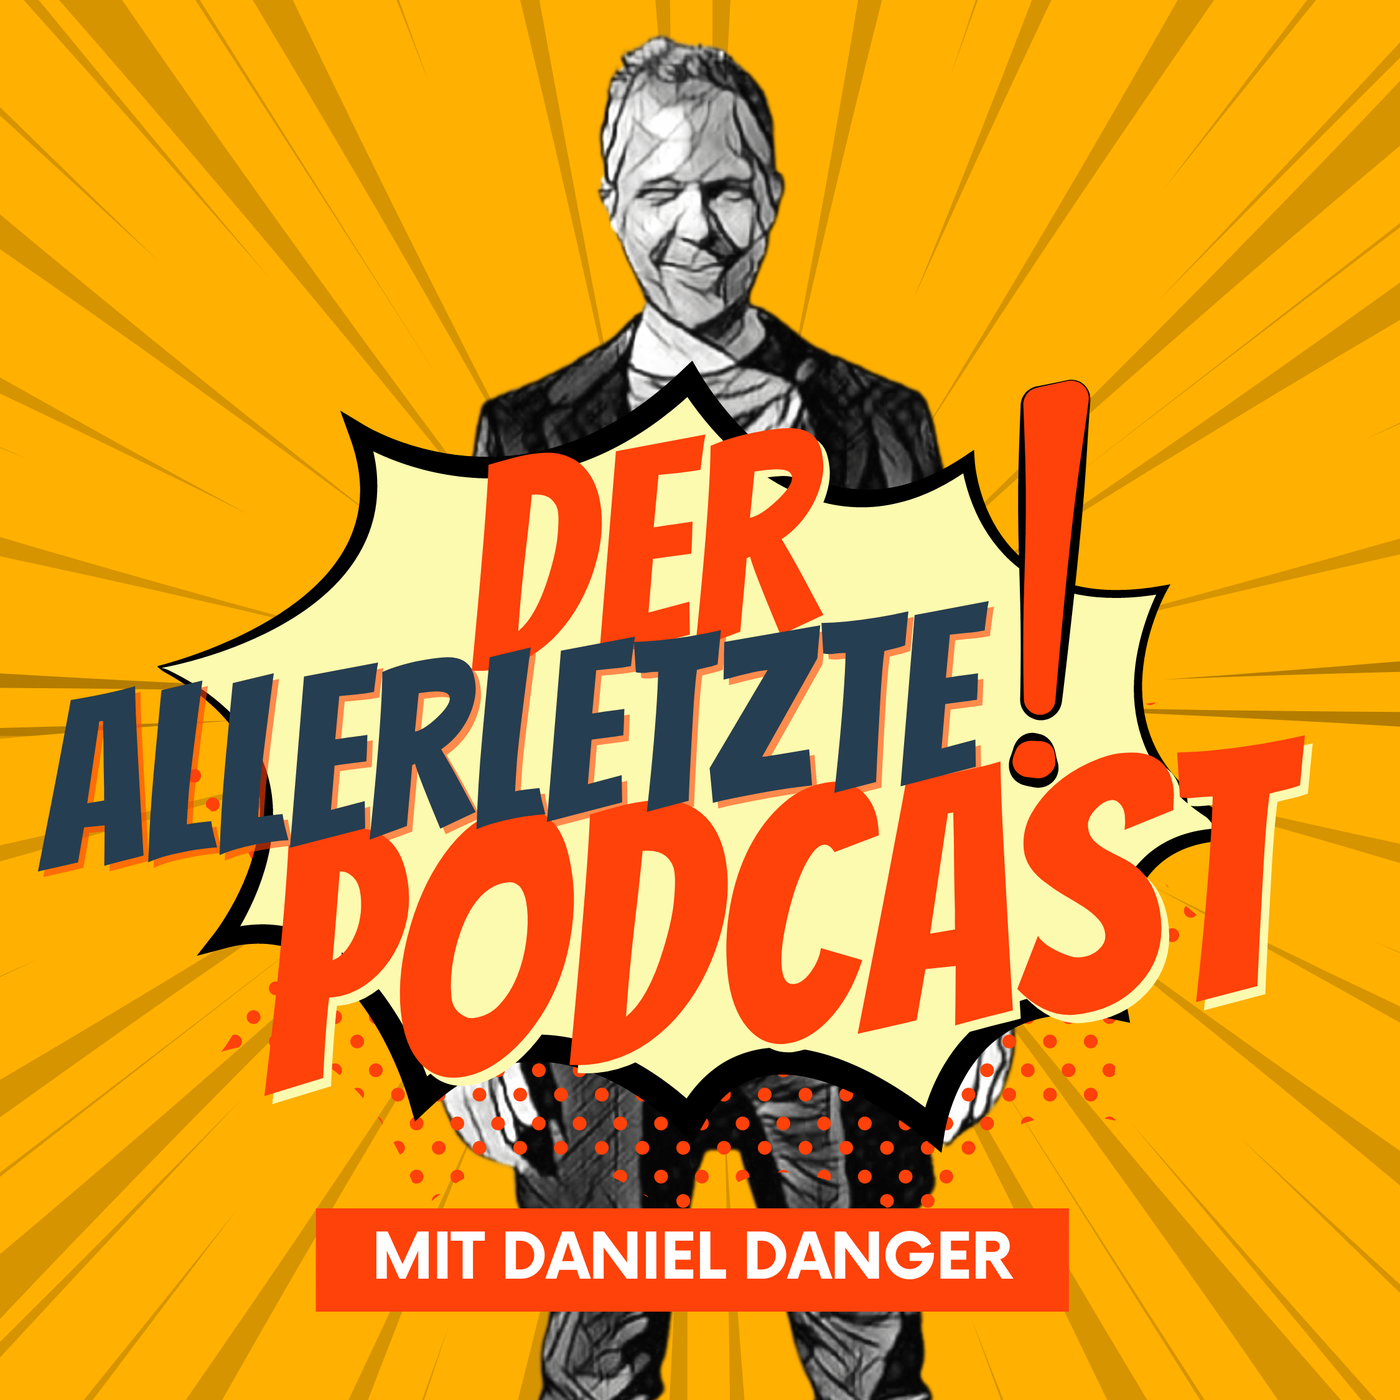 Der Allerletzte Podcast mit Daniel Danger